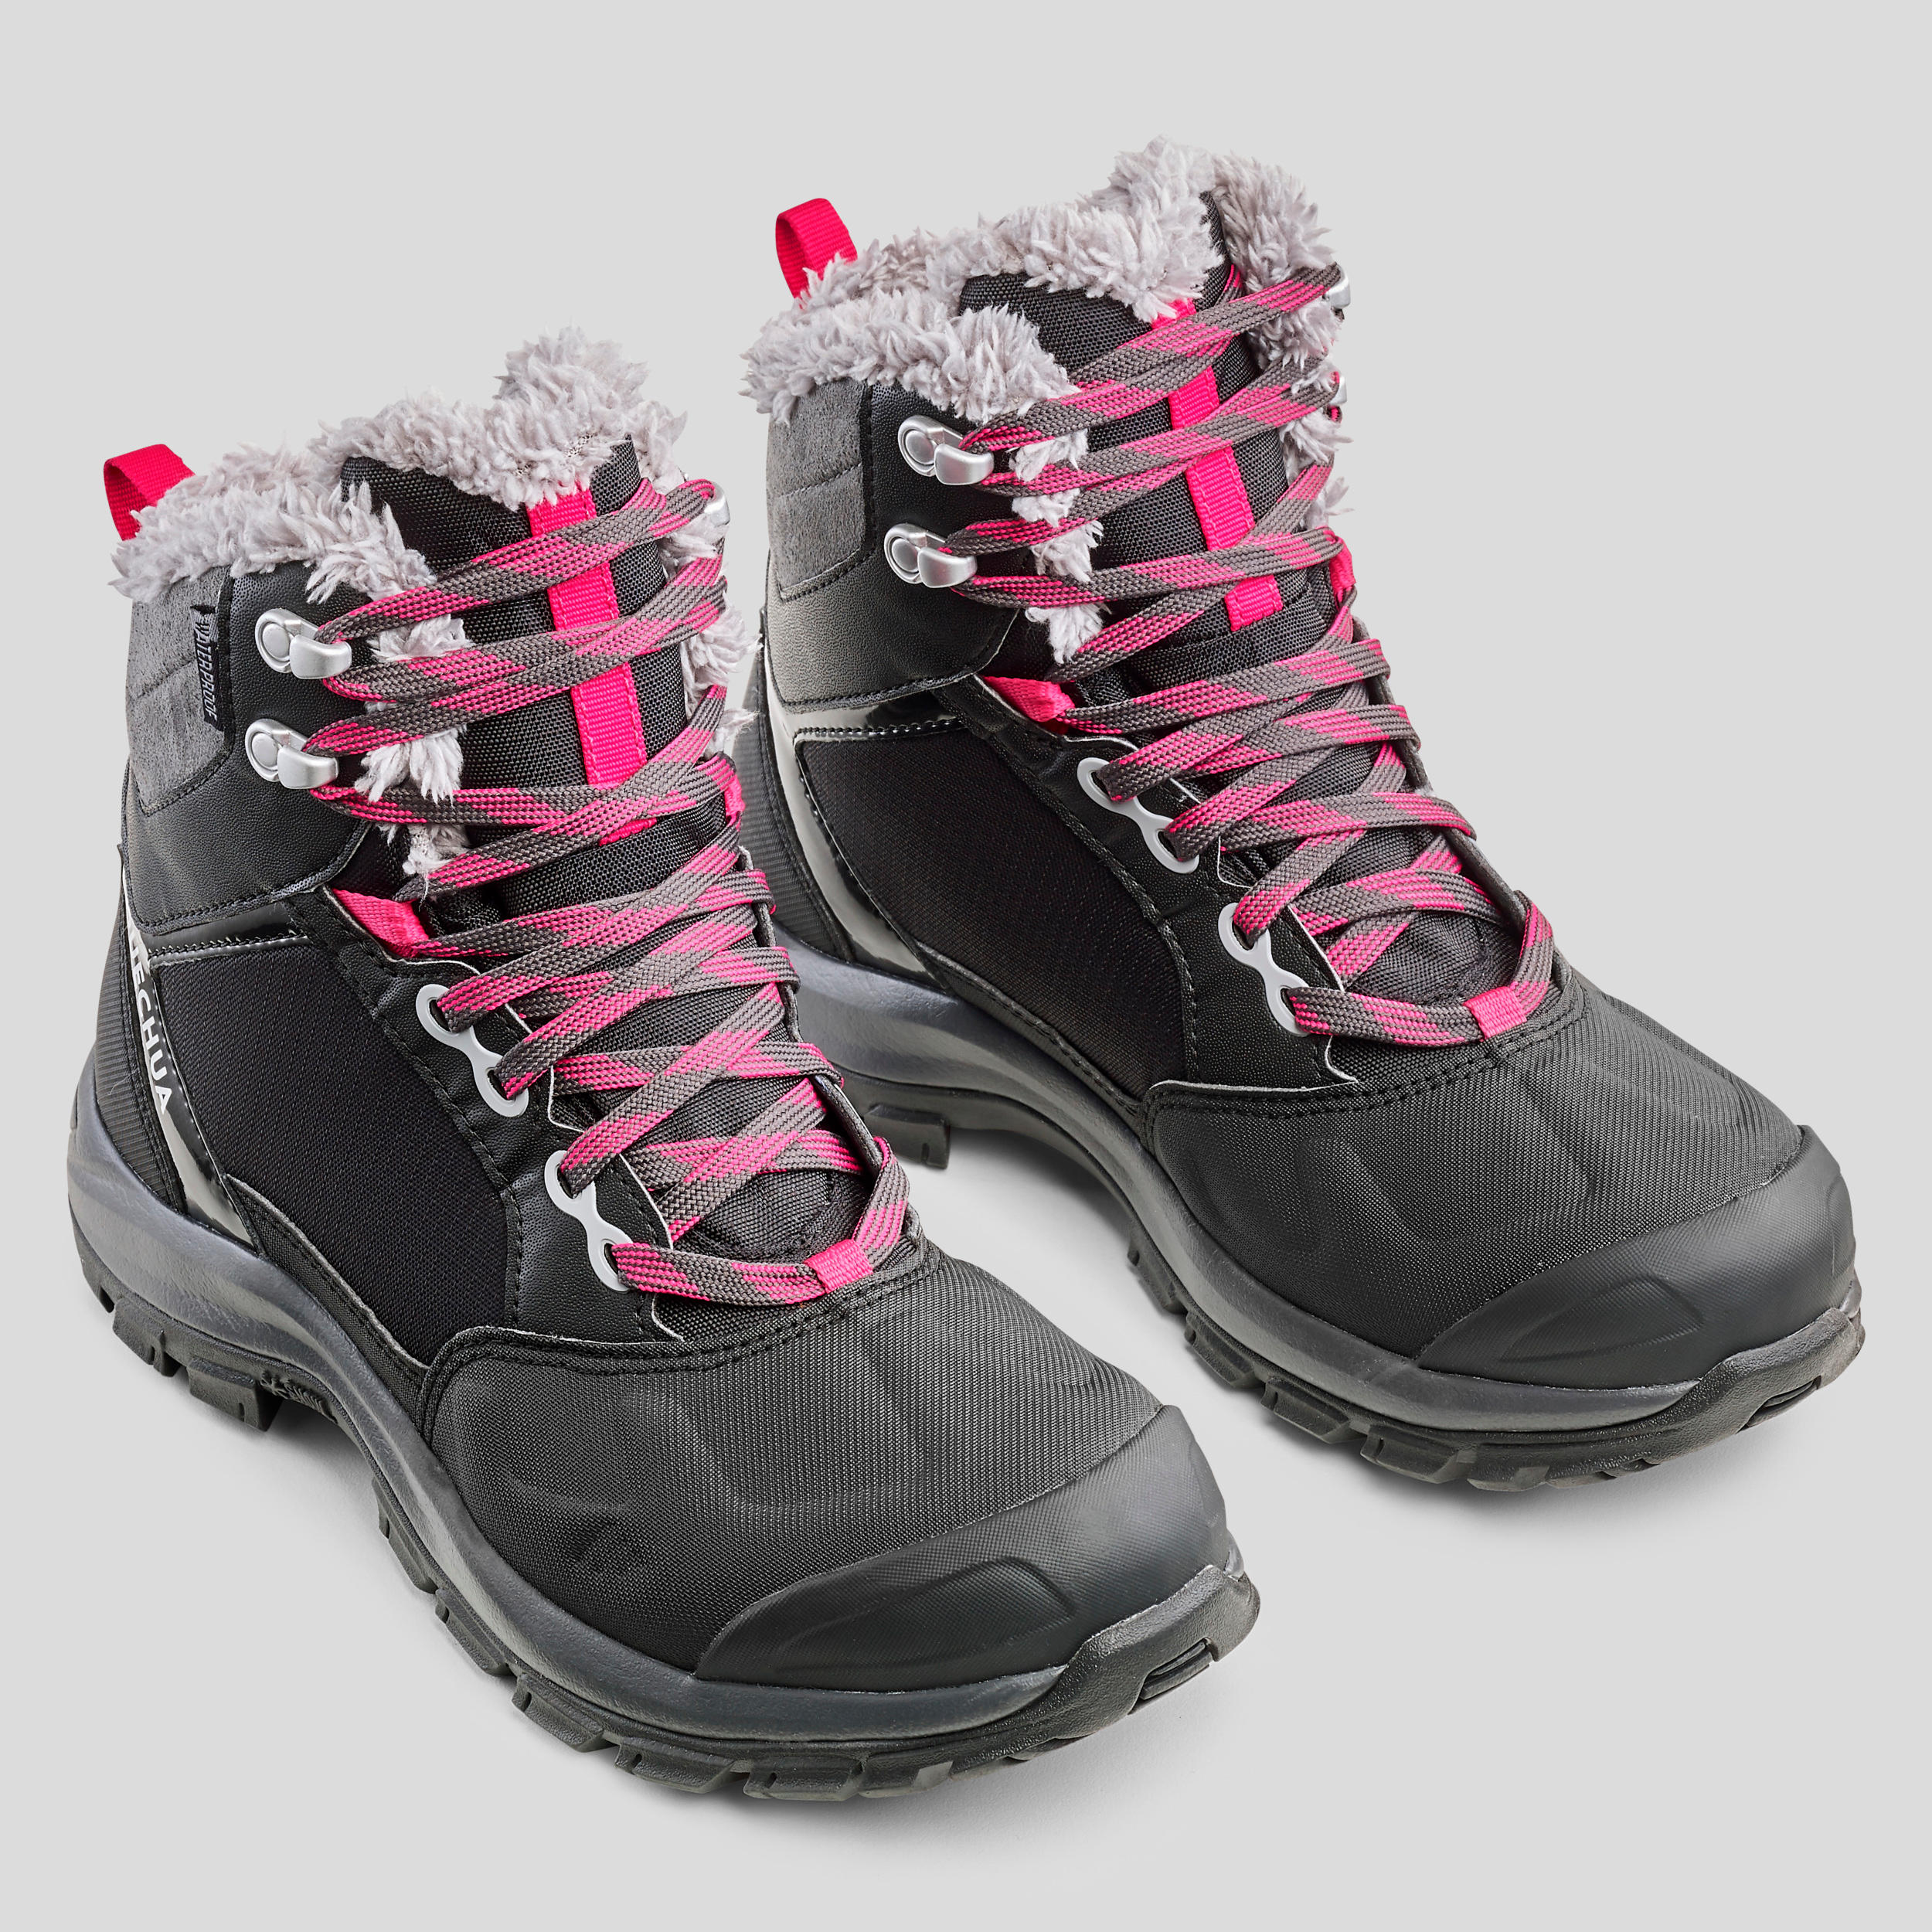 Bottes de randonnée d'hiver femmes – SH 520 X-Warm noir - QUECHUA